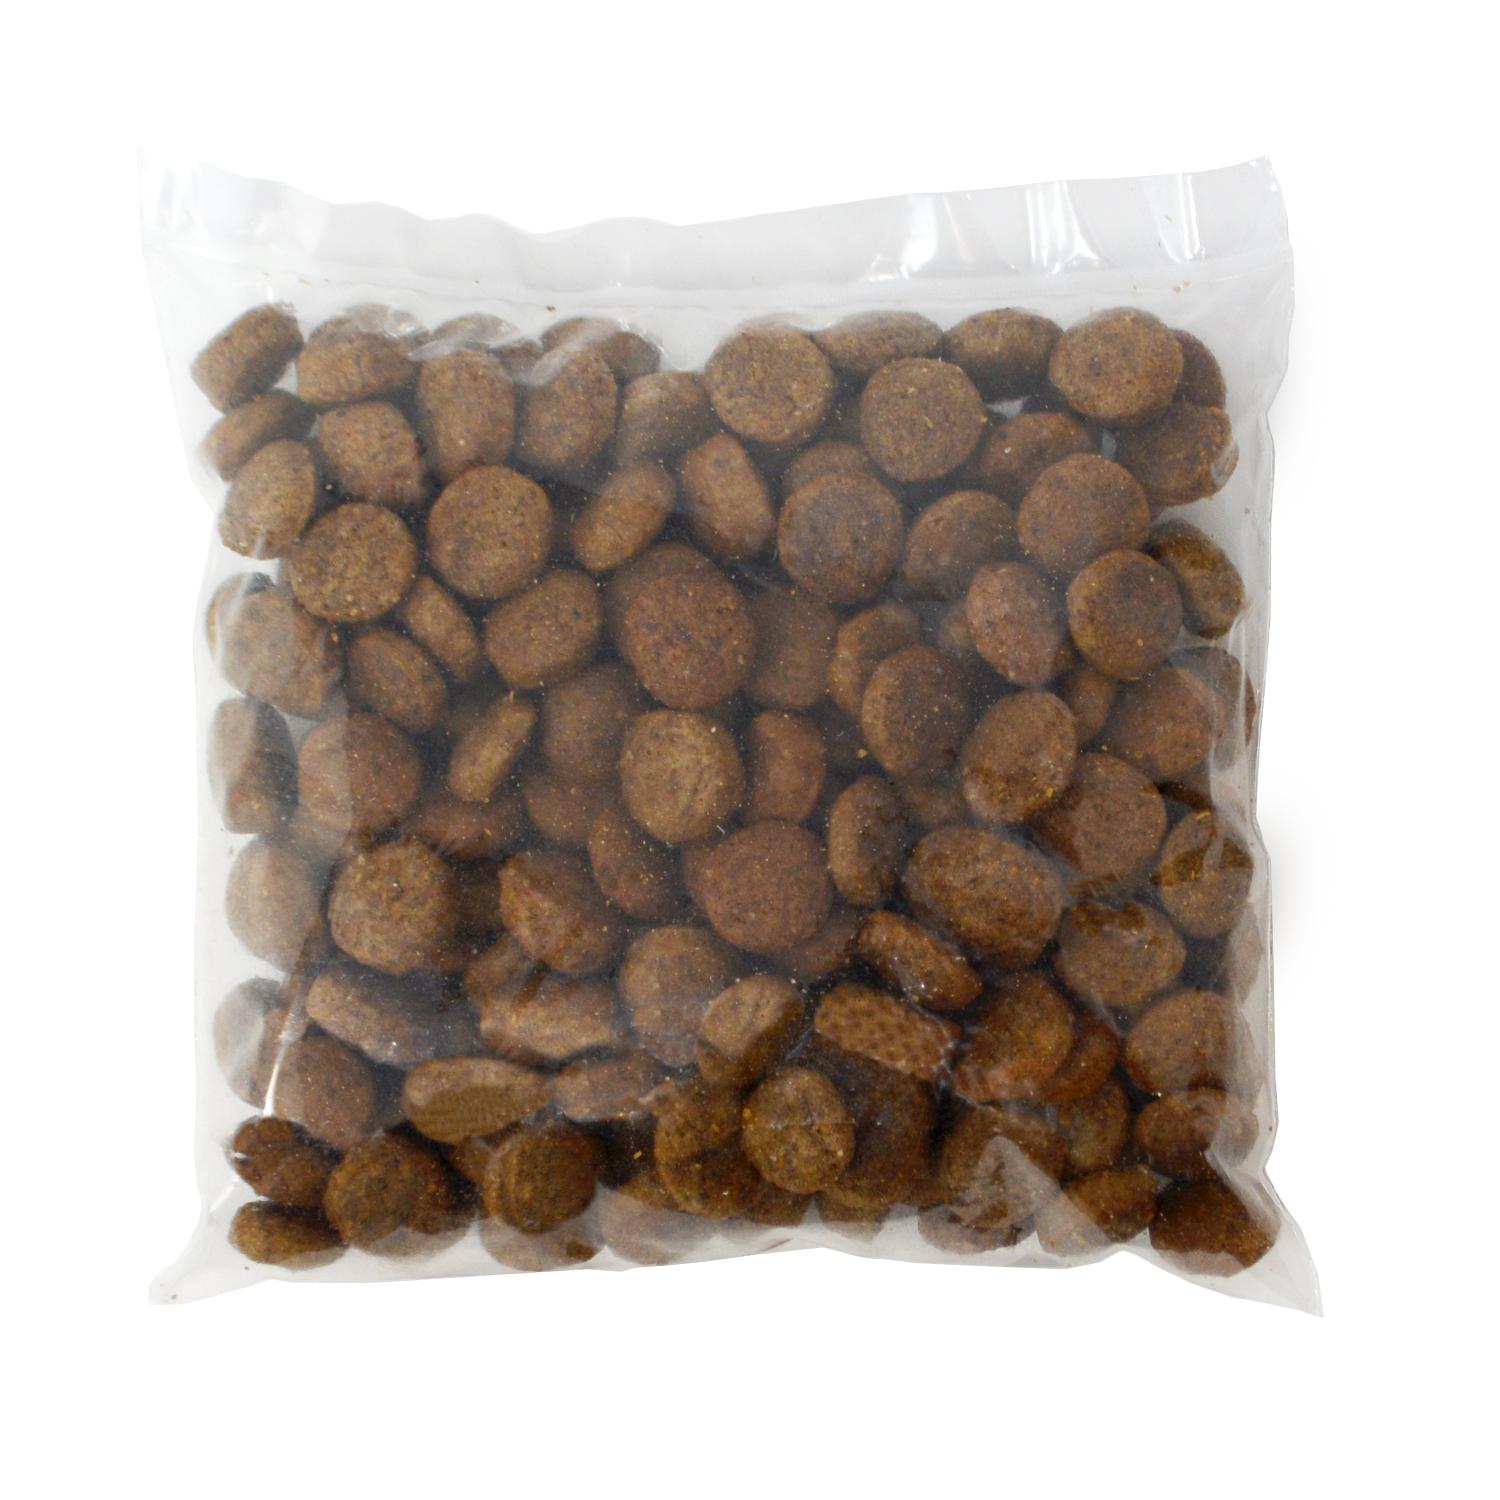 Back of a sample pack of Omni pet plant based adult dog food